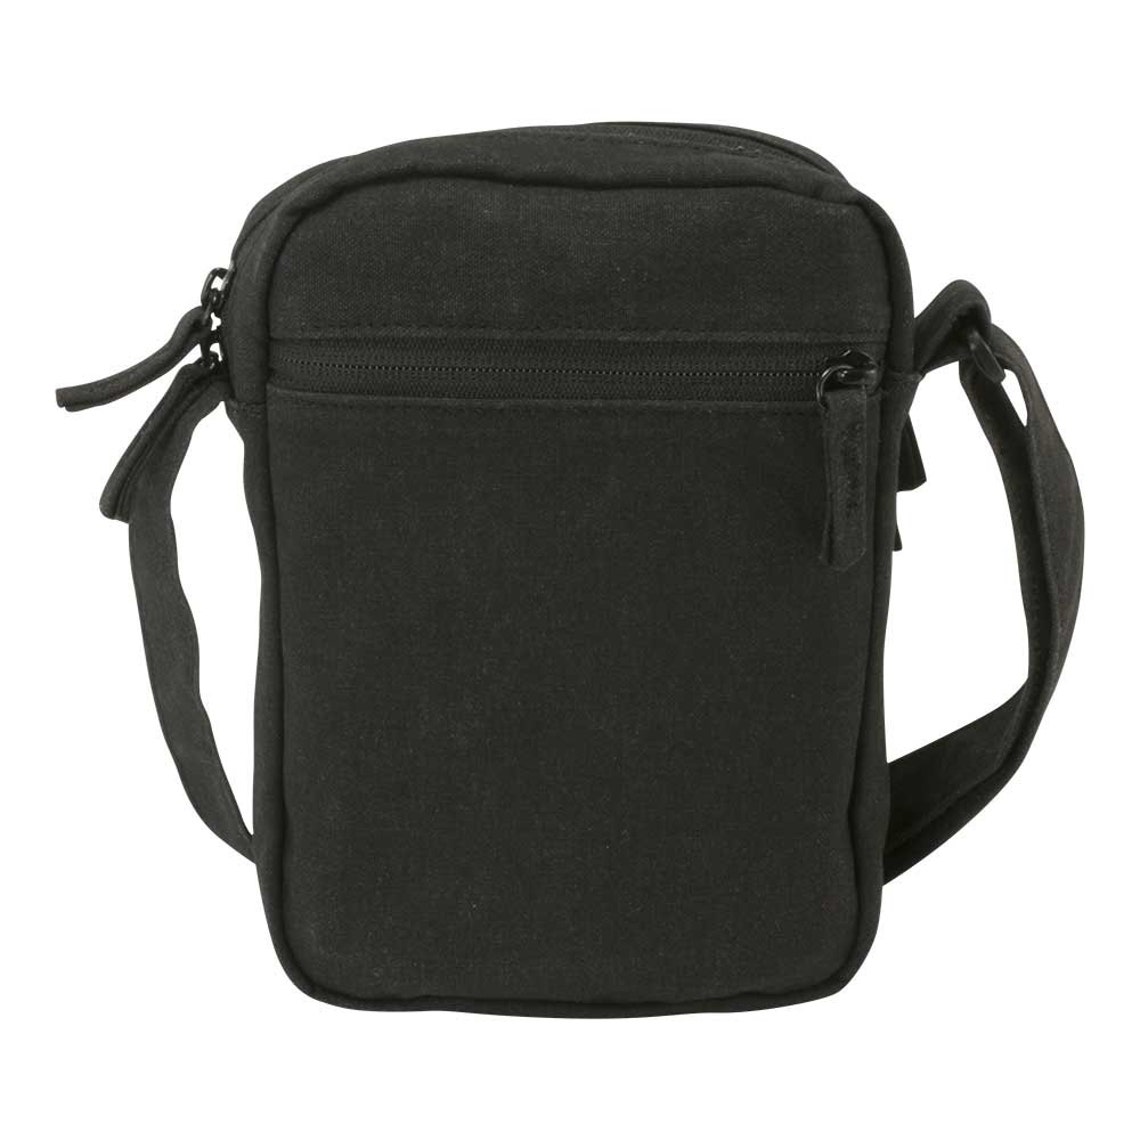 Ipad Mini Shoulder Bag Tablet Bag Canvas Bag Crossbody - Etsy Australia